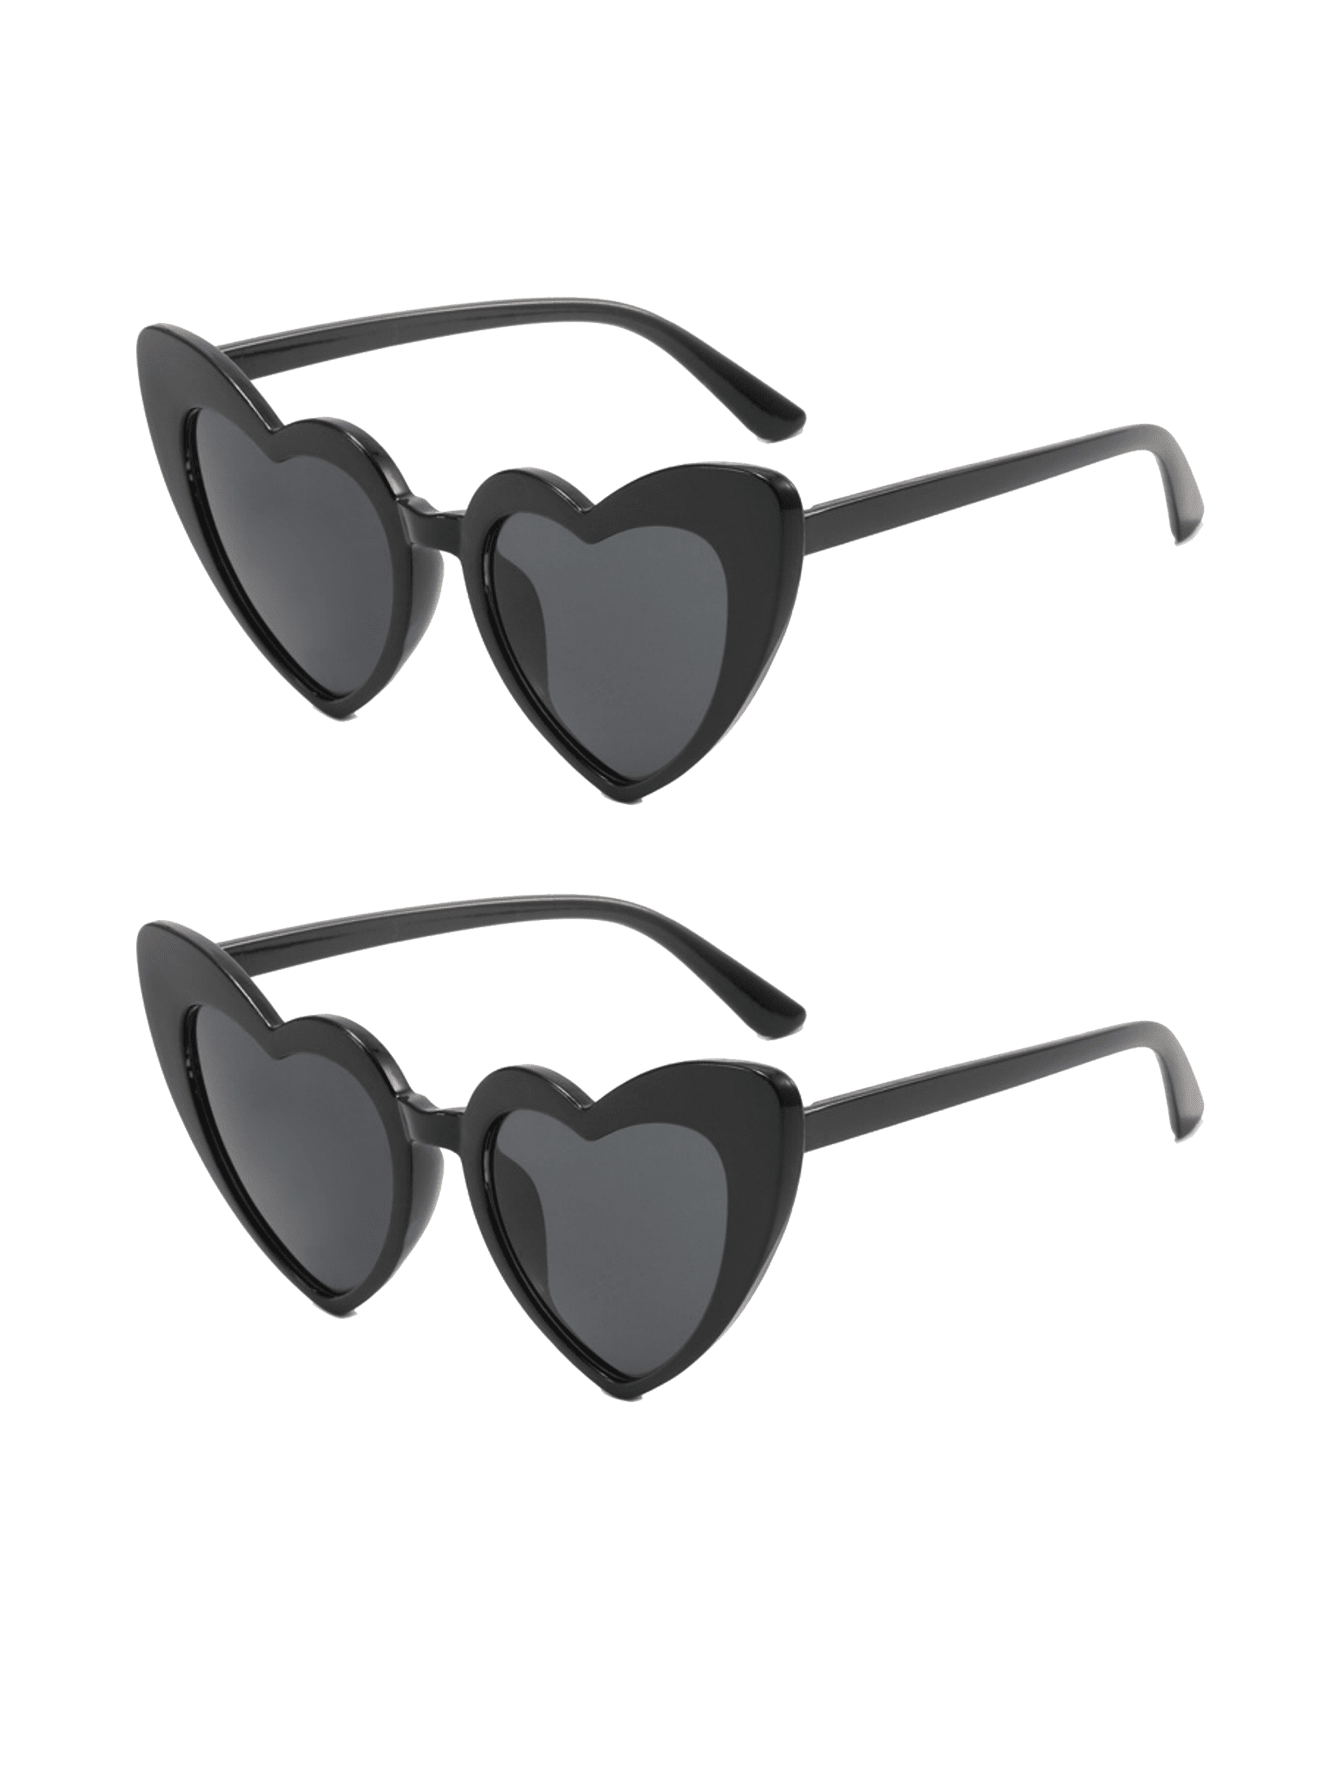 2 шт. солнцезащитные очки в форме сердца для женщин очки солнцезащитные женские donna dn915 002 ут 00010039